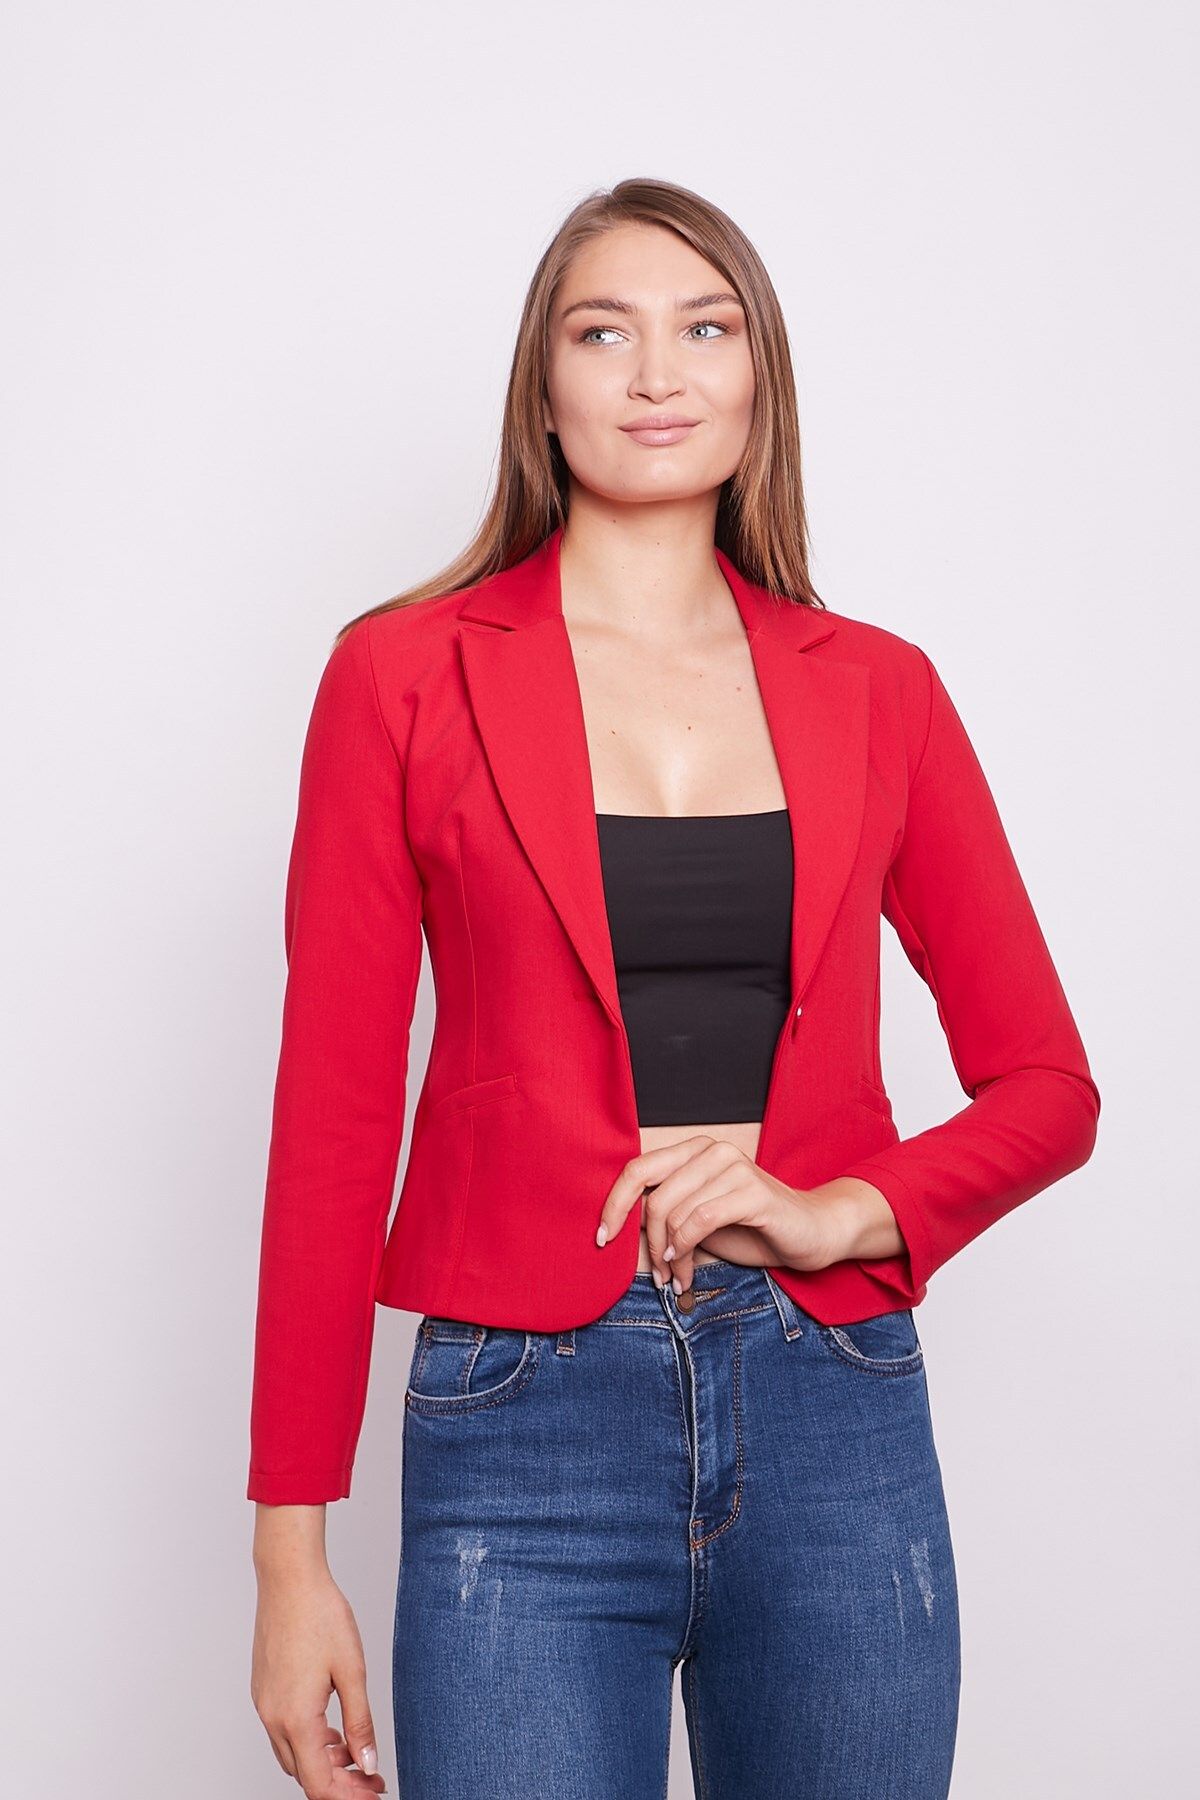 Jument Yakalı Flato Cepli Uzun Kol Pamuklu Kumaş Kısa Blazer Ofis Ceket -kırmızı